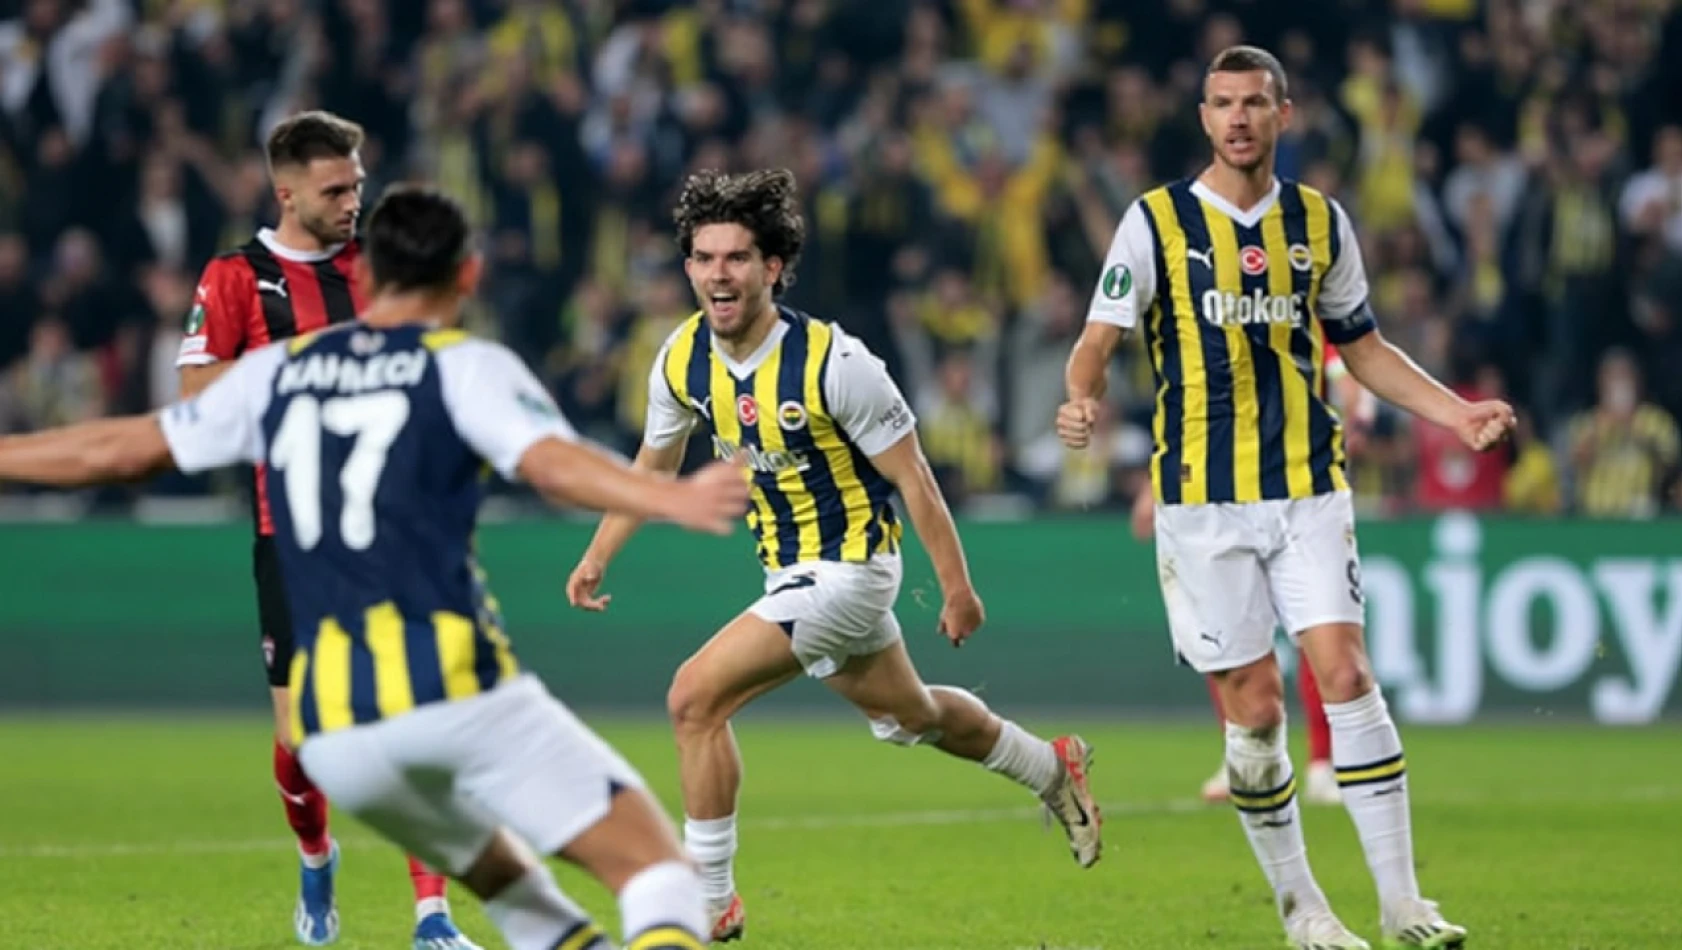 Fenerbahçe, Spartak Trnava'yı farklı mağlup ederek grubunu lider tamamladı